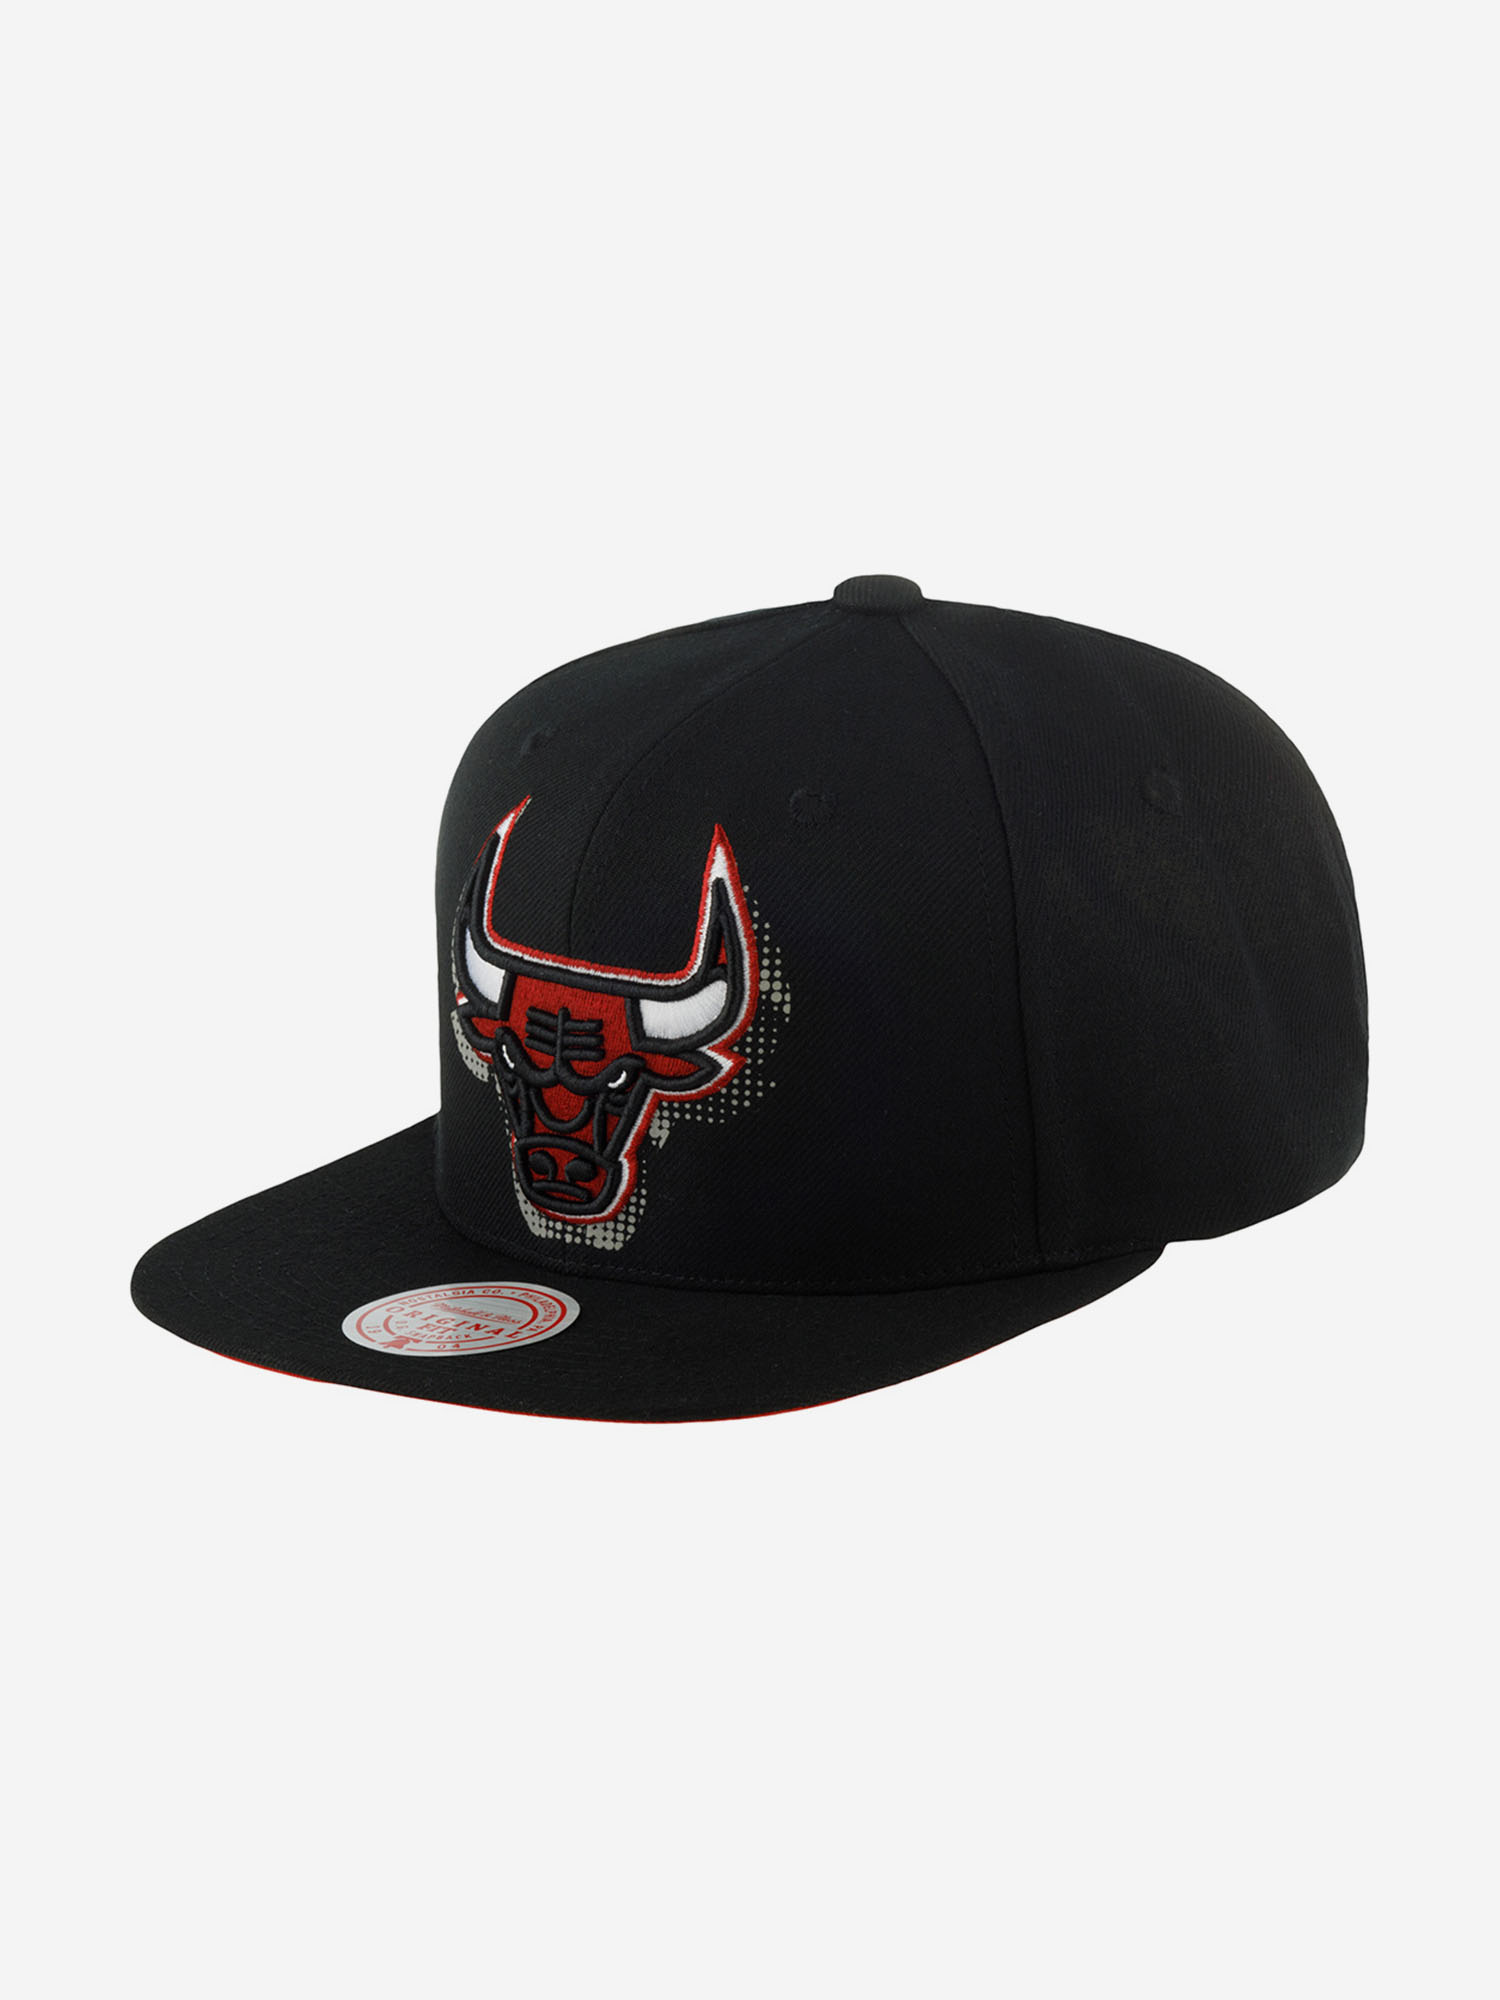 Бейсболки HHSS6045-CBUYYPPPBLCK Chicago Bulls NBA (черный), Черный